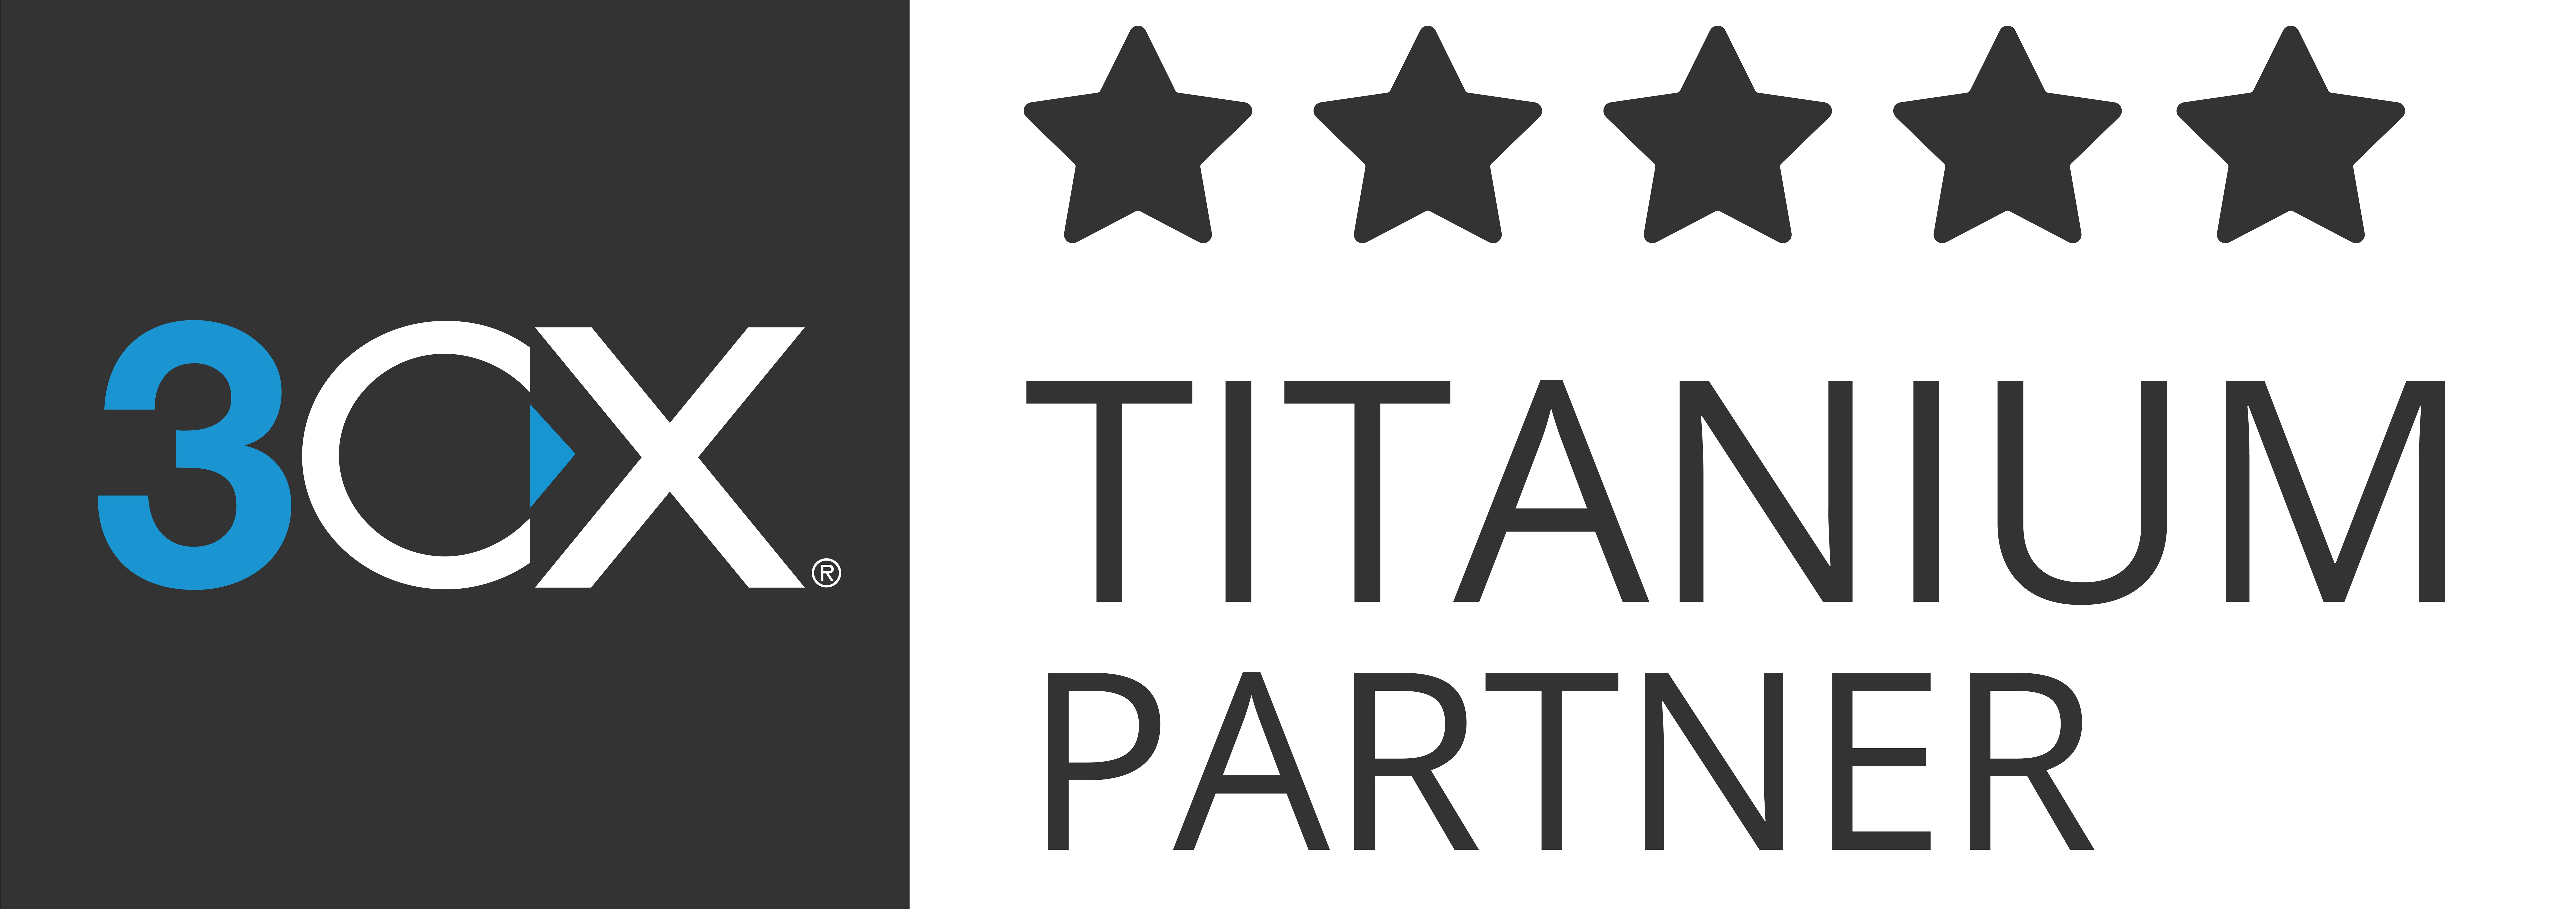 TITANIUM_partner_badges_high_1